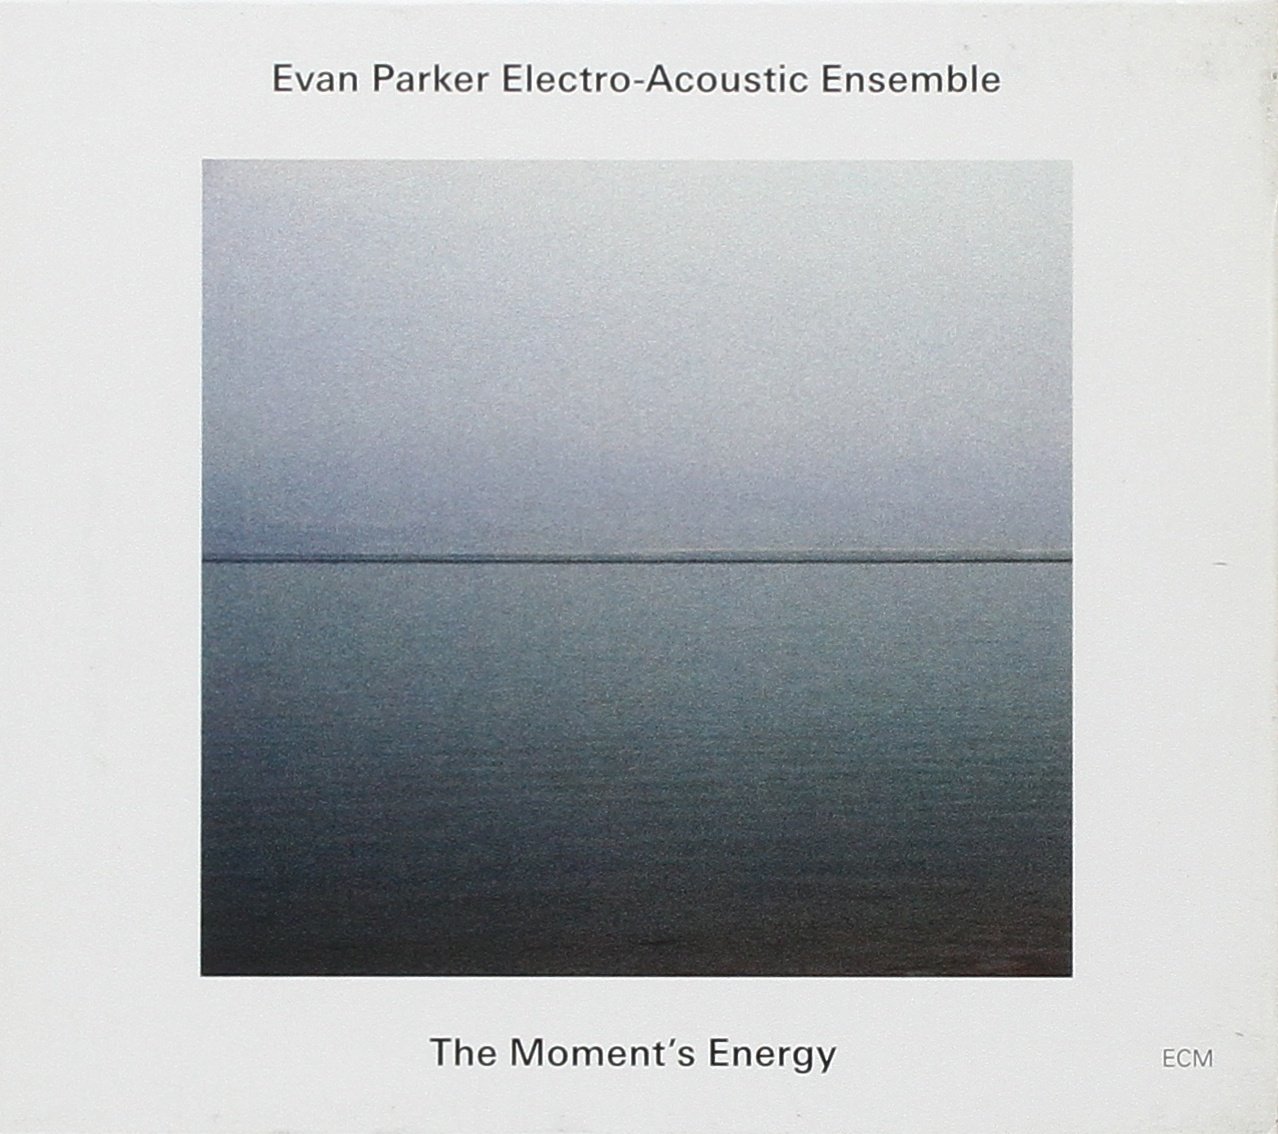 Evan Parker Electro-Acoustic Ensemble - The Moment’s Energy (2009/2016) [AcousticSounds FLAC 24bit/44,1kHz]